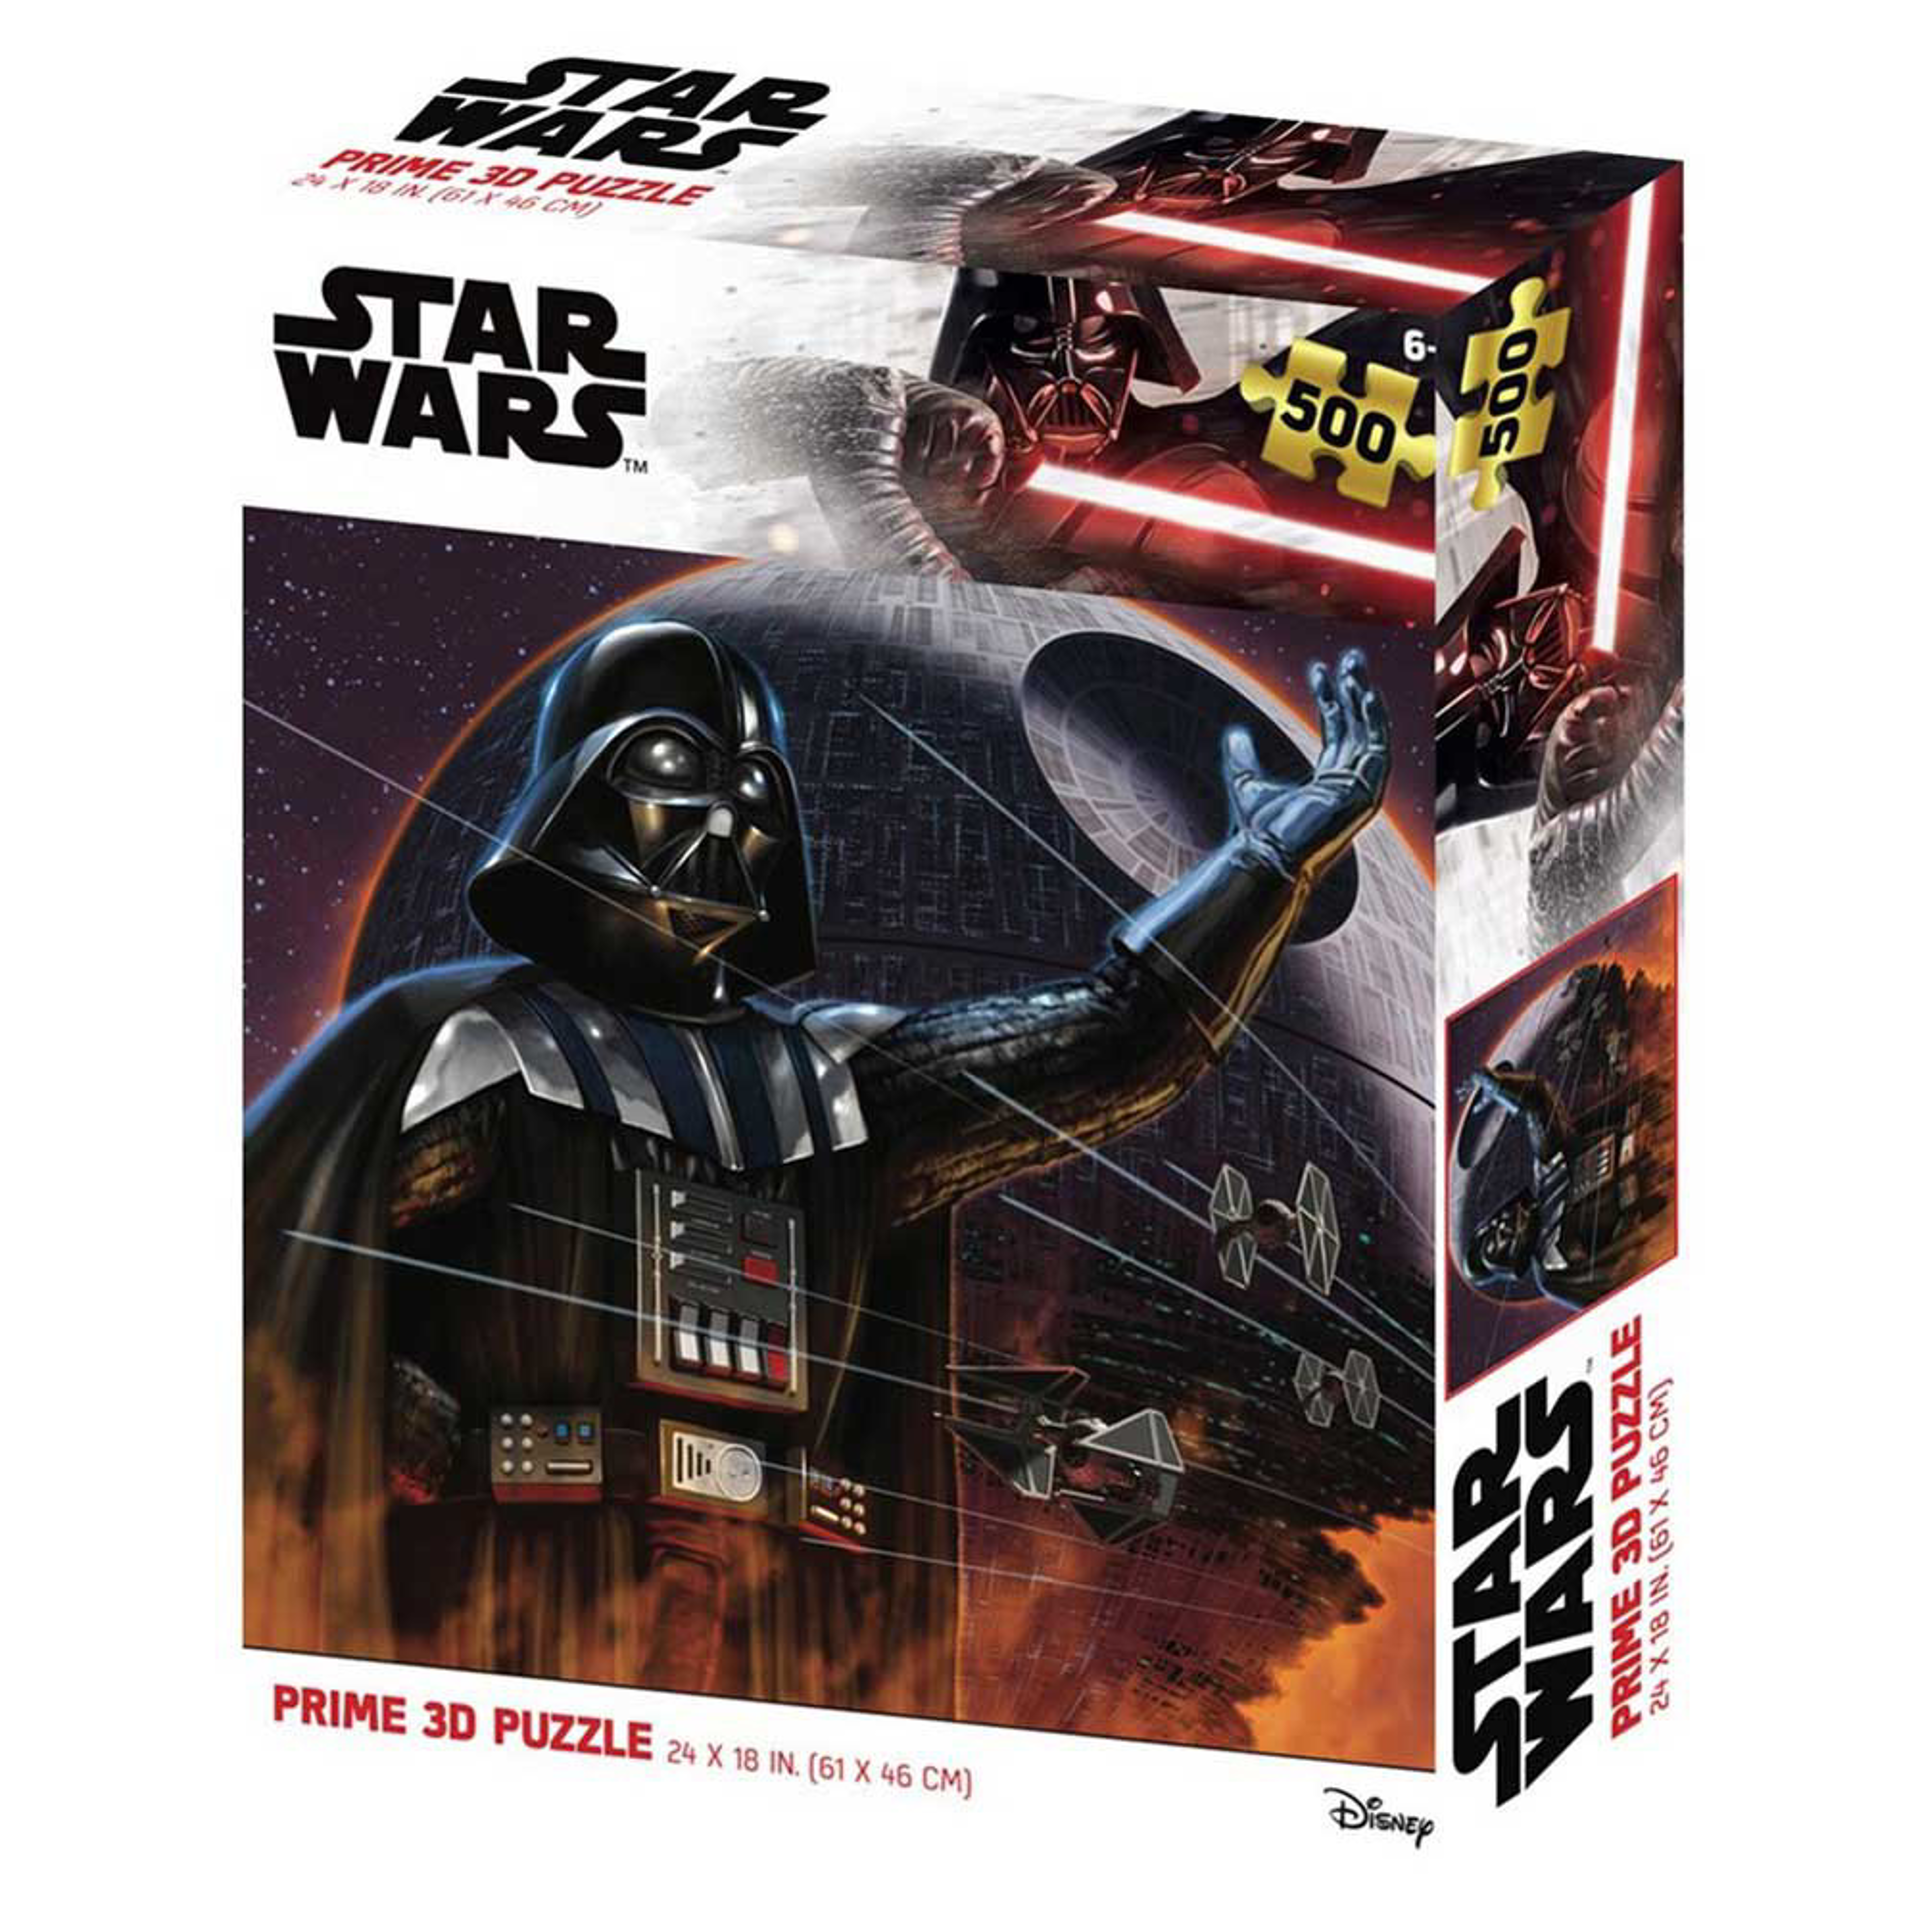 Star Wars - Puzzle lenticulaire Dark Vader et l'Étoile de la mort 500 pcs 61x46 cm